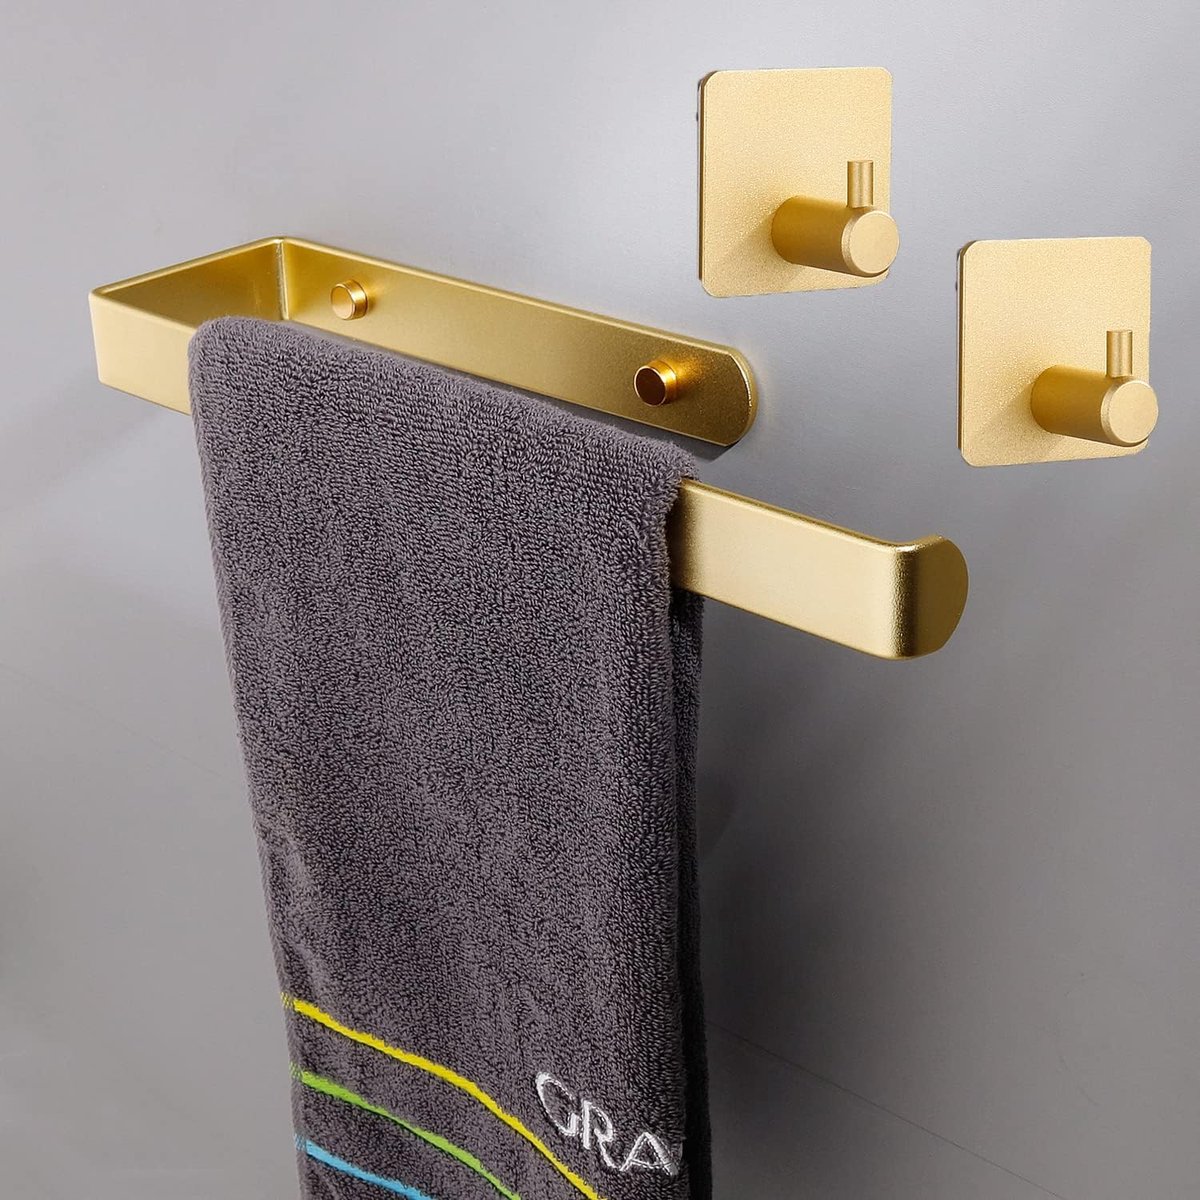 Handdoekrail voor lijmen voor badkamer en keuken, handdoekhouder met haken, 2 stuks wandhouders, zelfklevend voor handdoeken (goud)